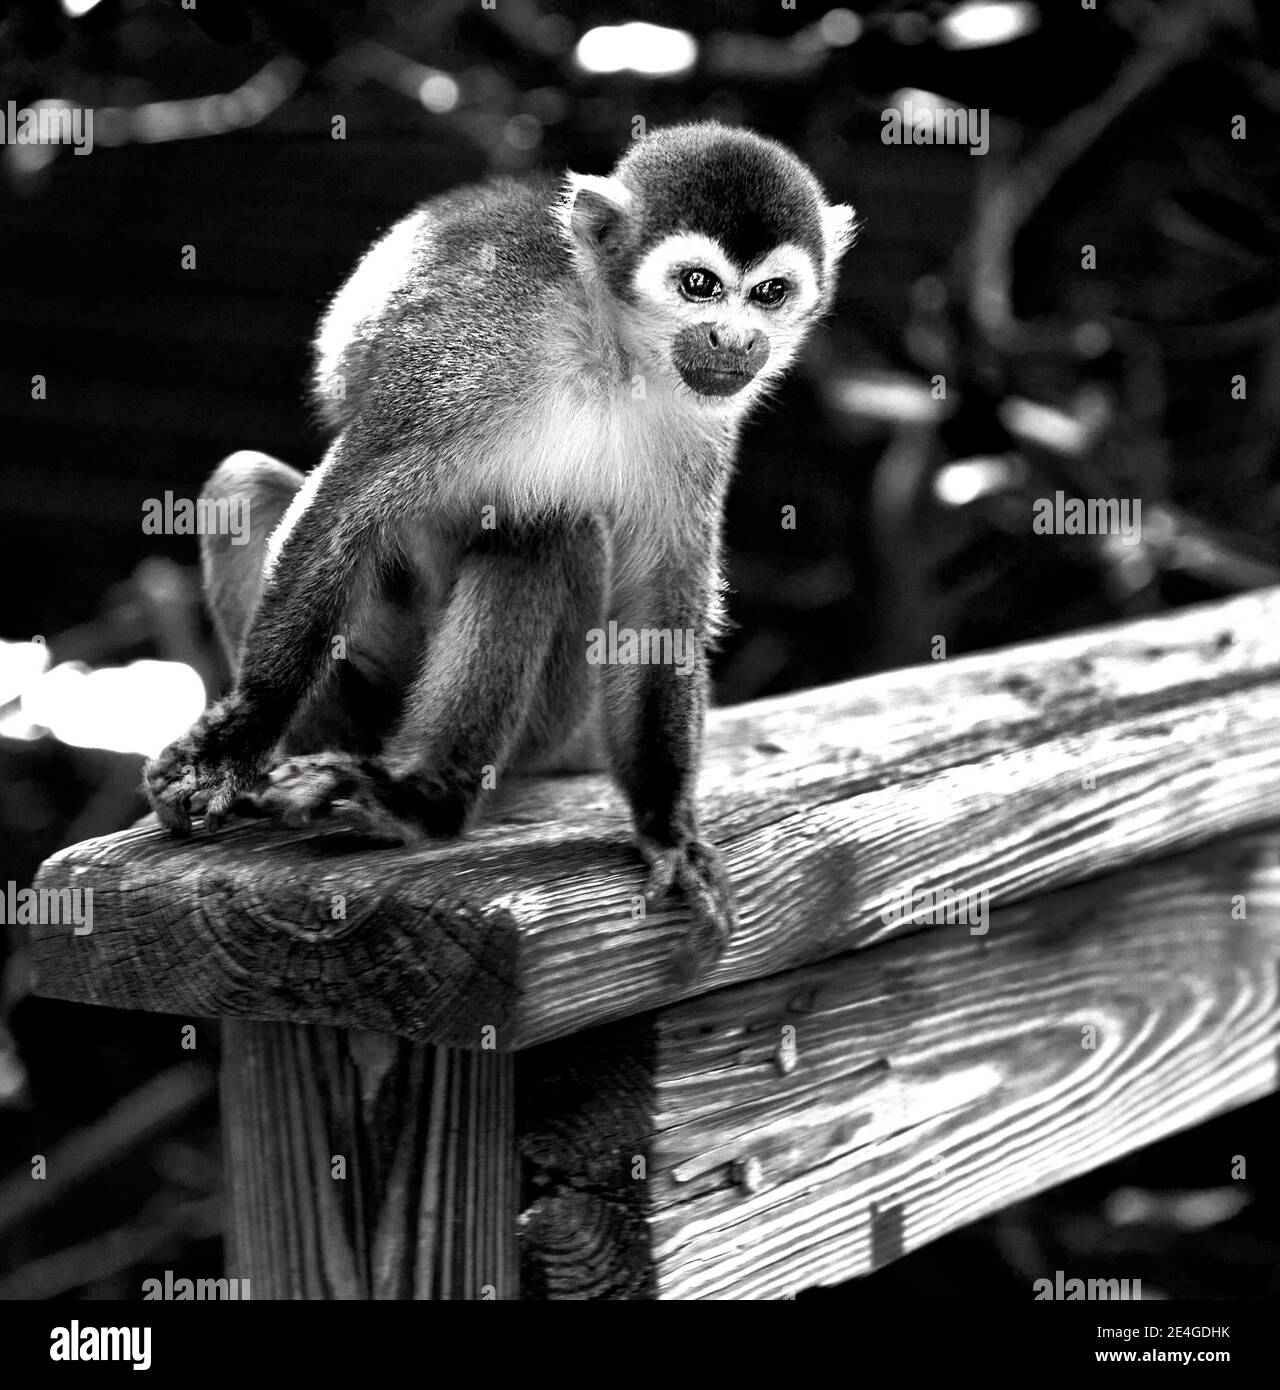 monkey on railing Stock Photo